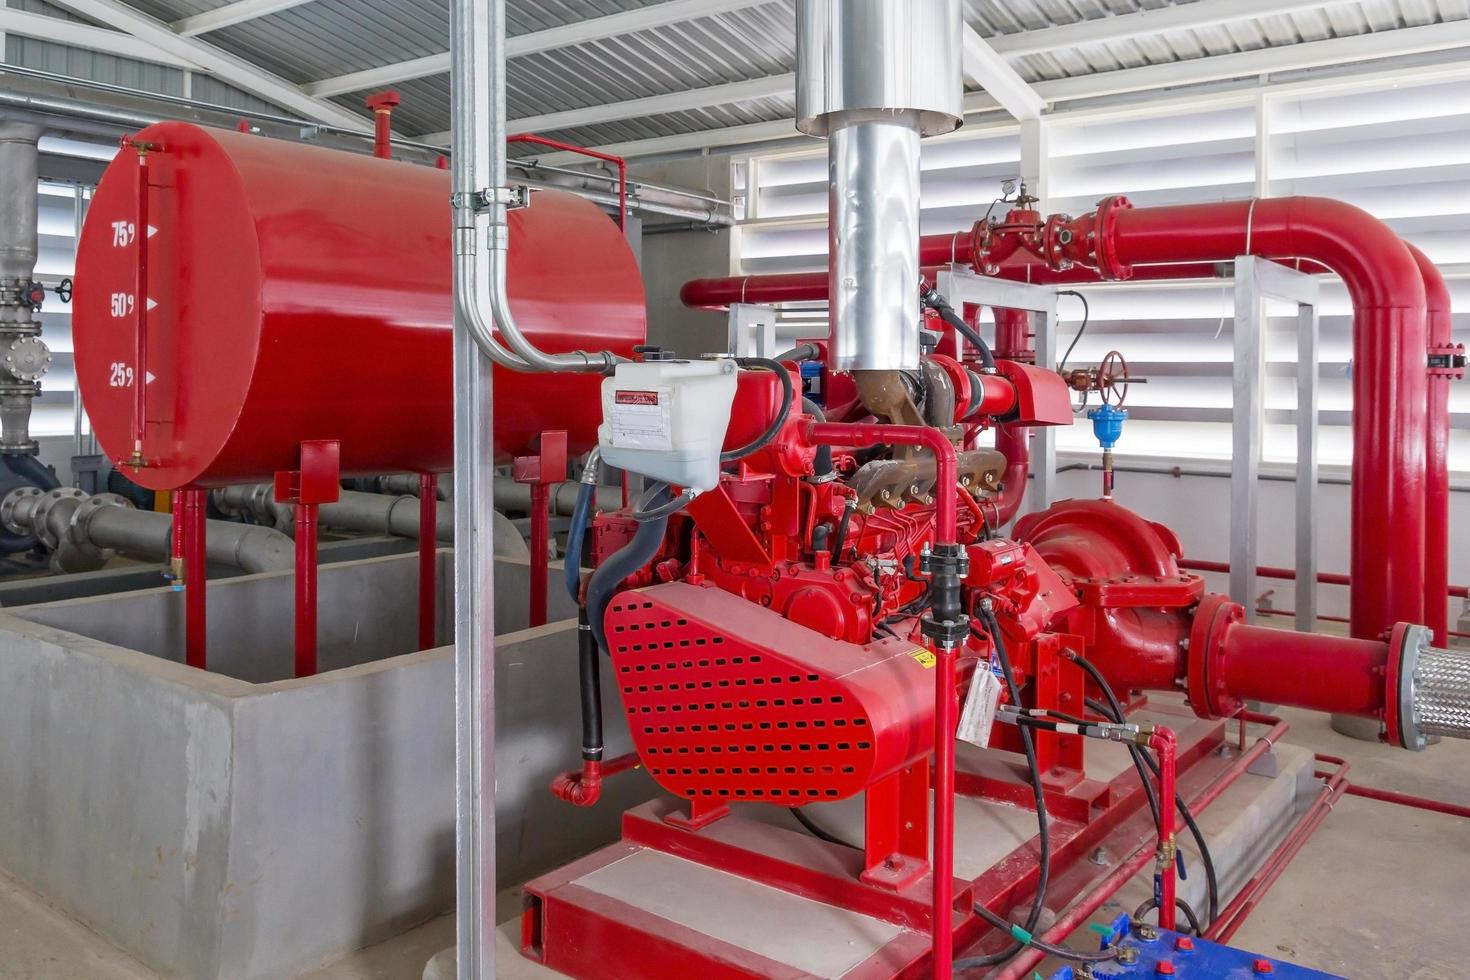 pompe de générateur rouge pour la tuyauterie d'arrosage d'eau et le système de contrôle d'alarme d'incendie photo